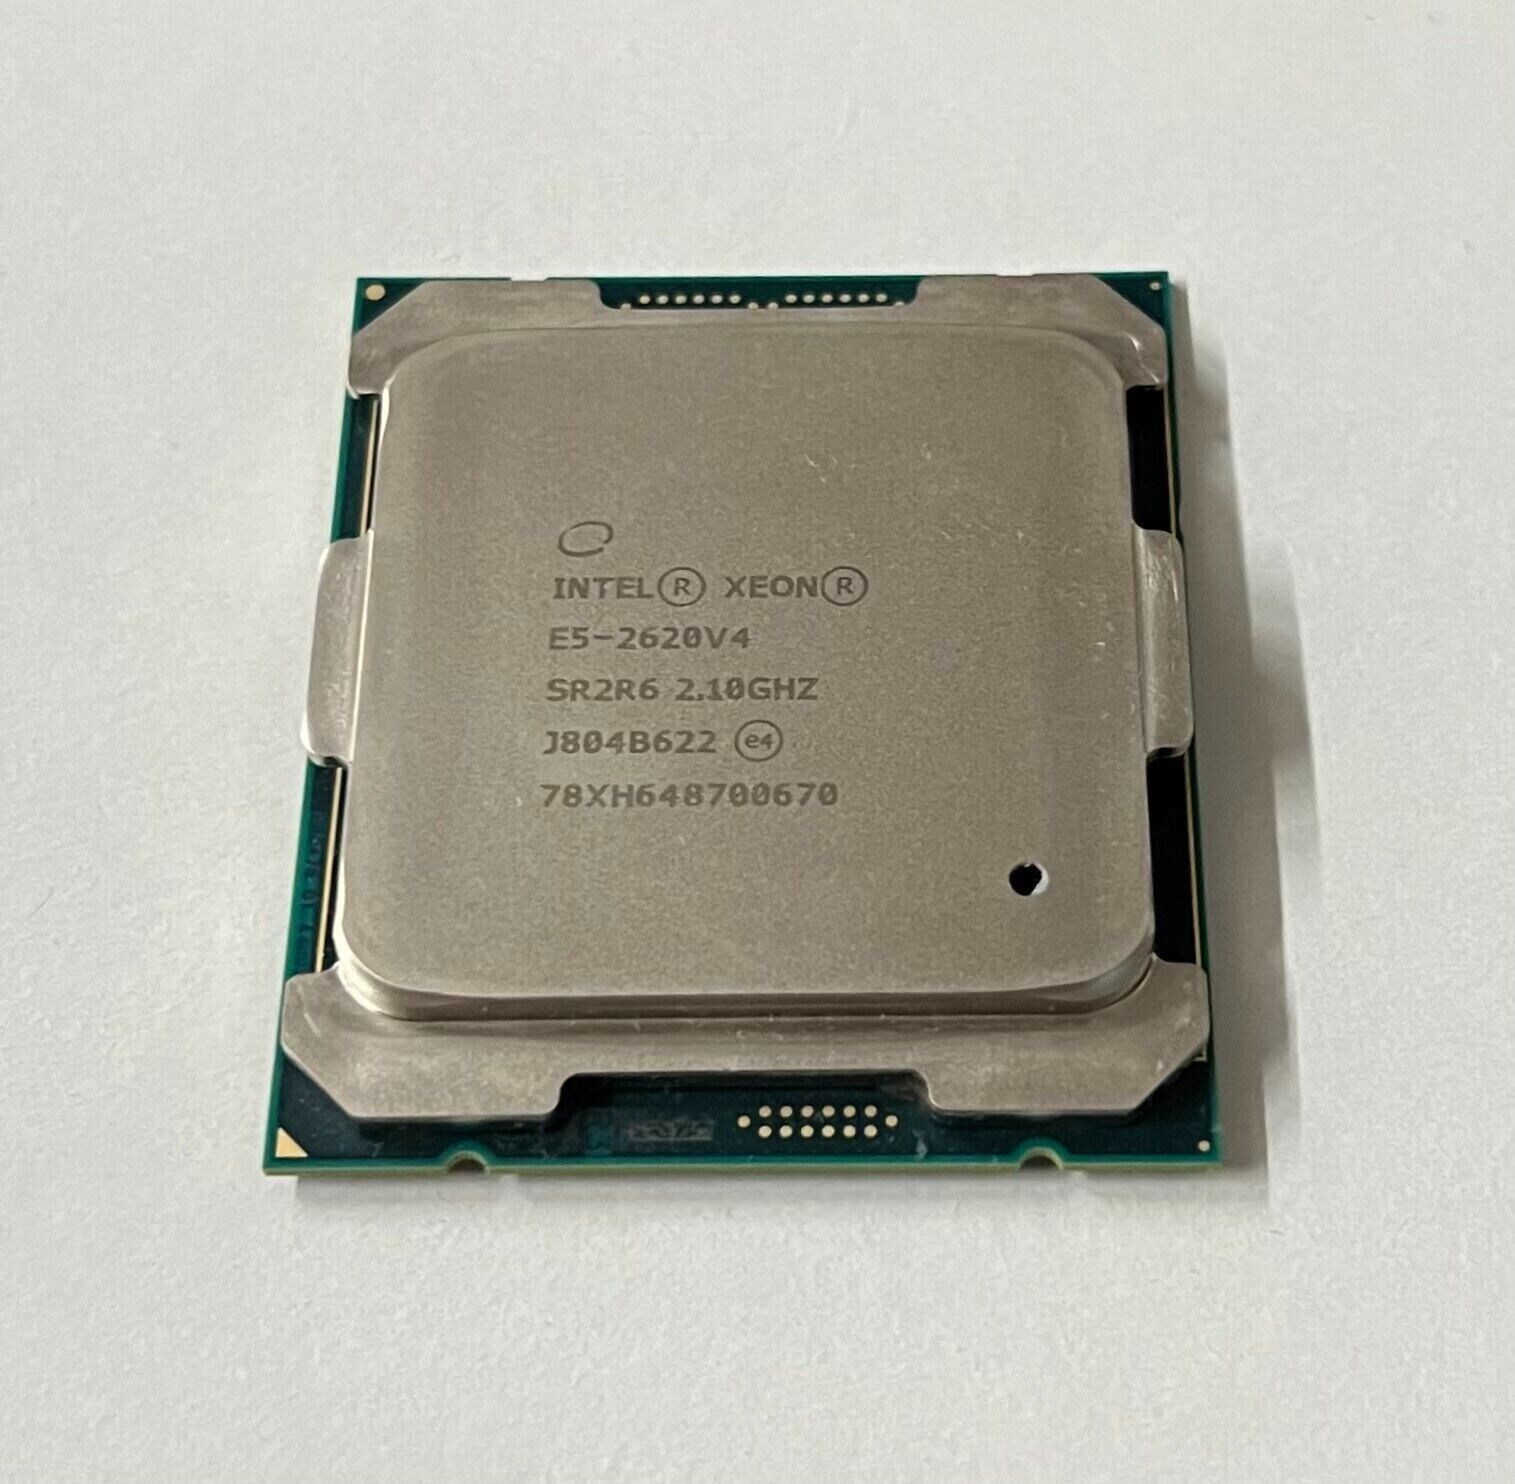 Intel Xeon E5-2620v4 2.1Ghz 8-Core 20M SR2R6 85W Processor